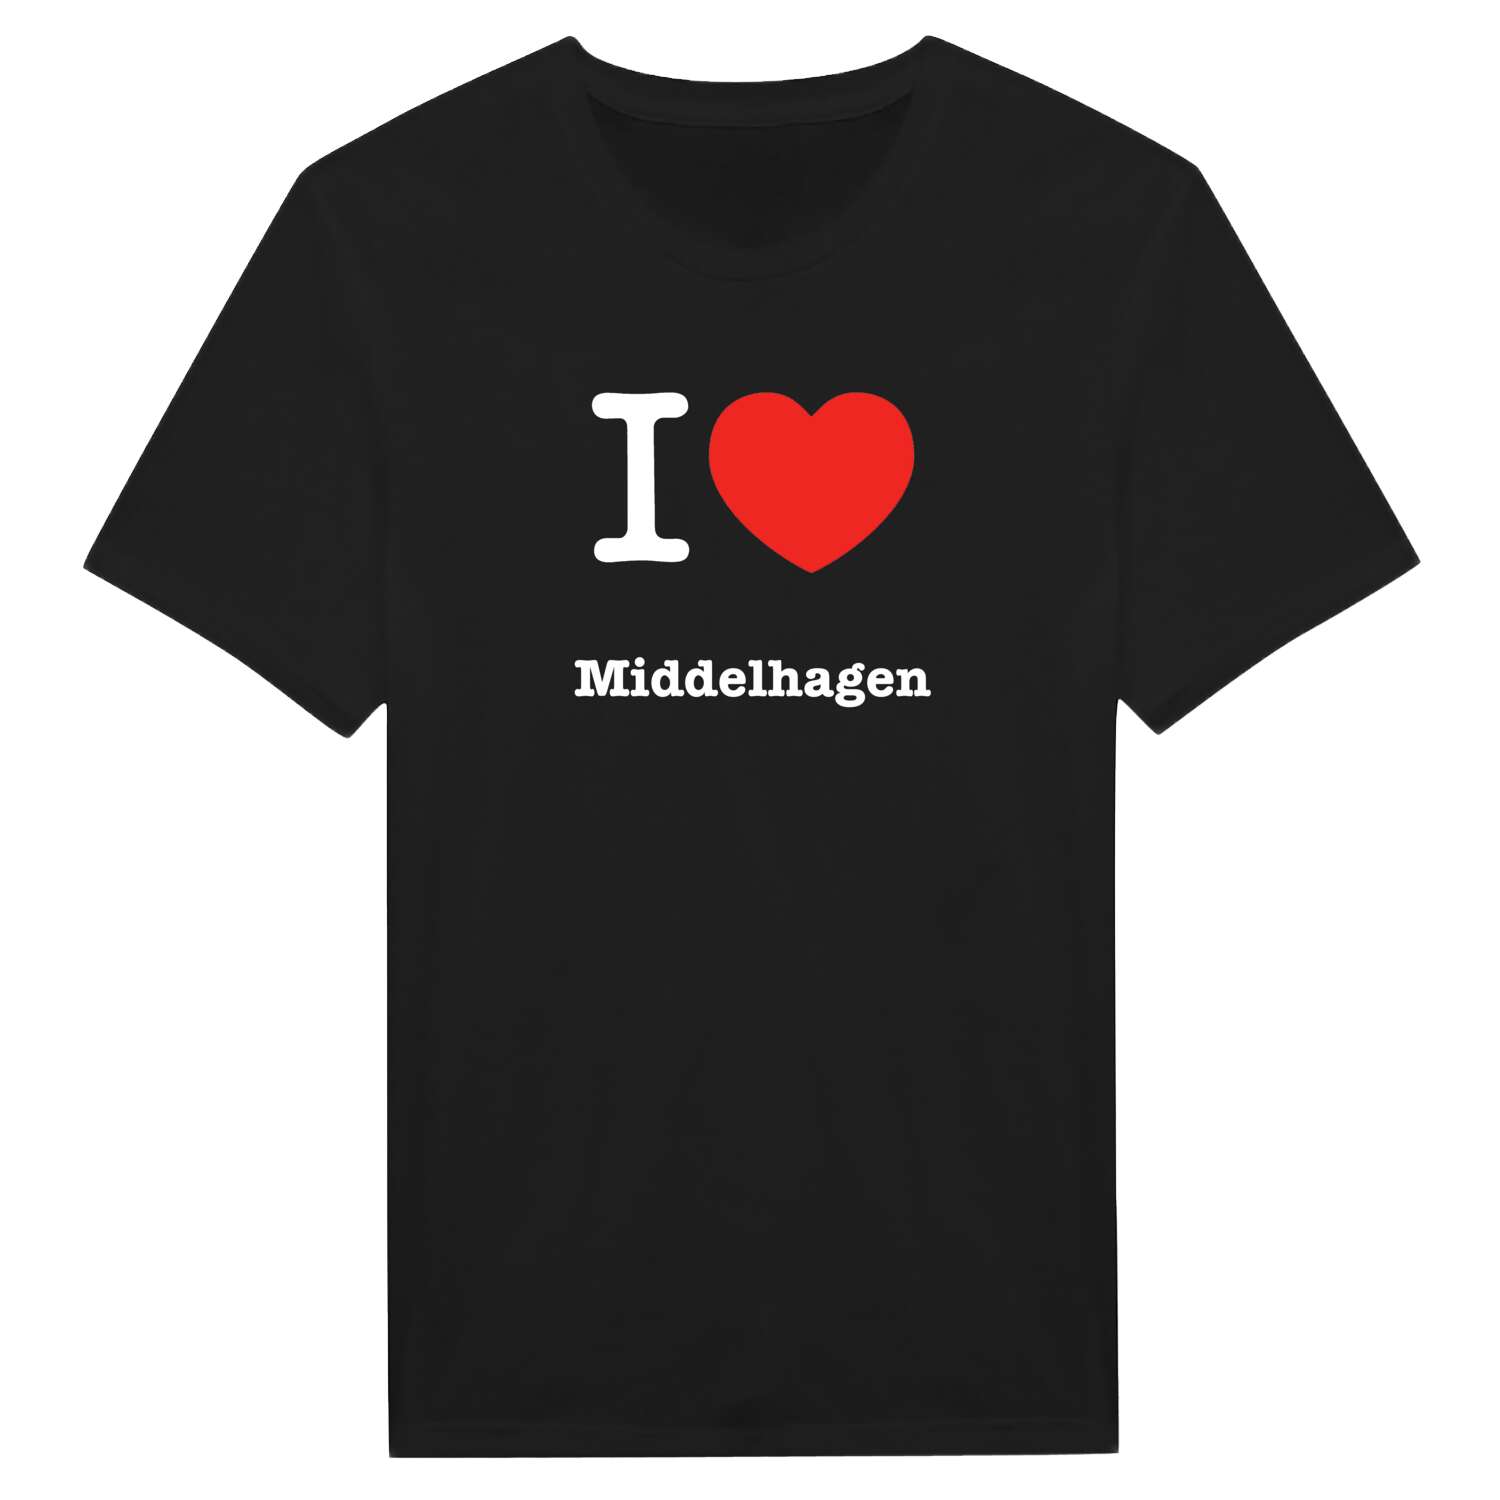 Middelhagen T-Shirt »I love«